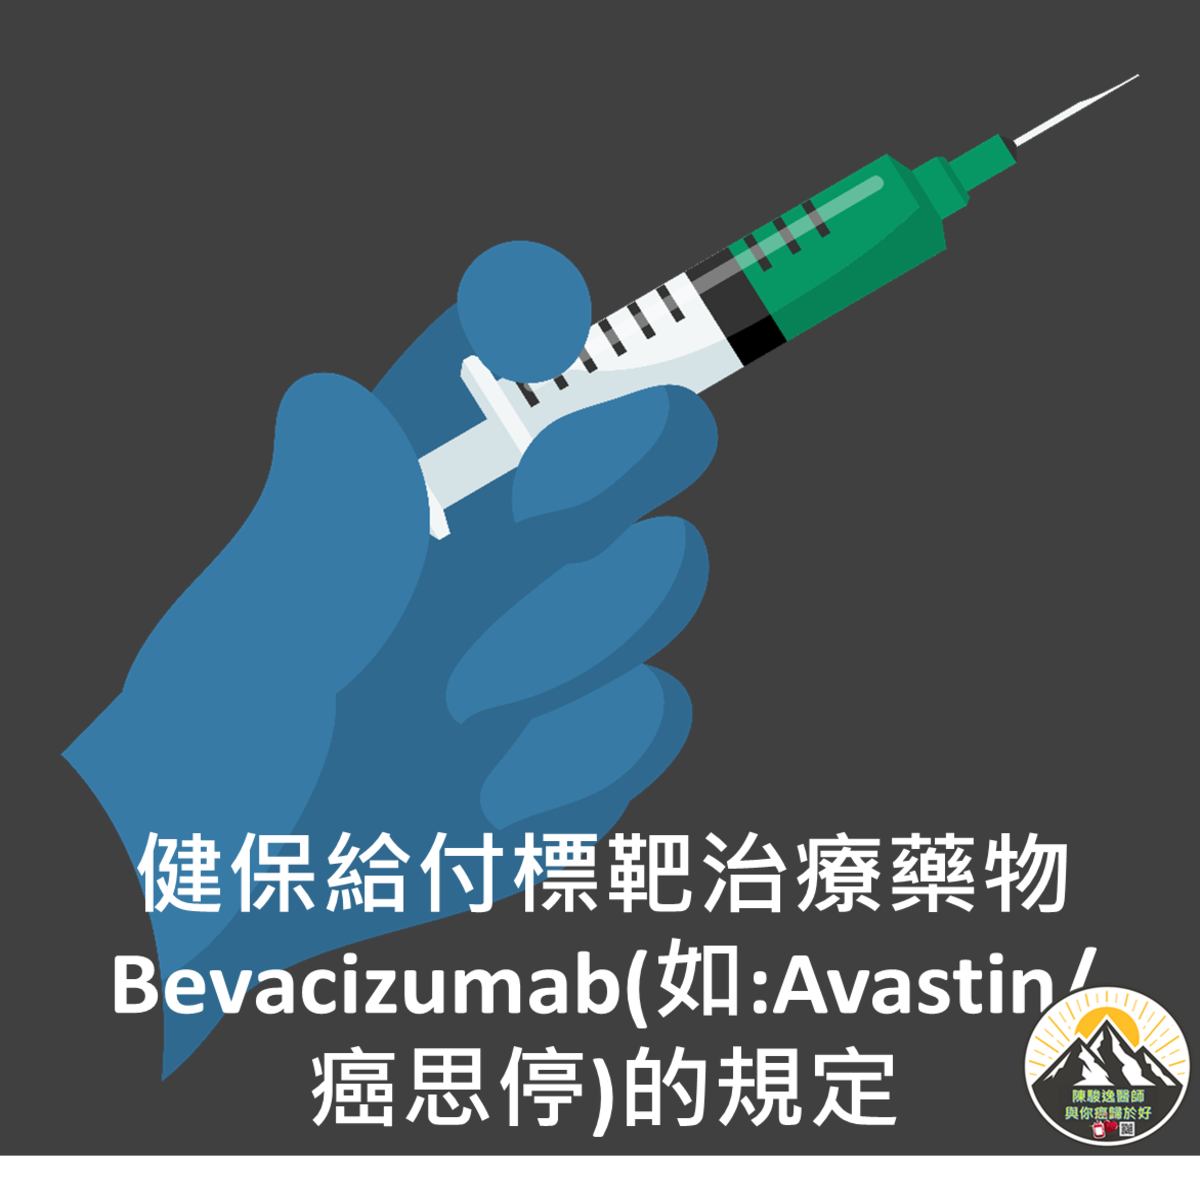 健保給付標靶治療藥物Bevacizumab(如:Avastin/癌思停)的規定